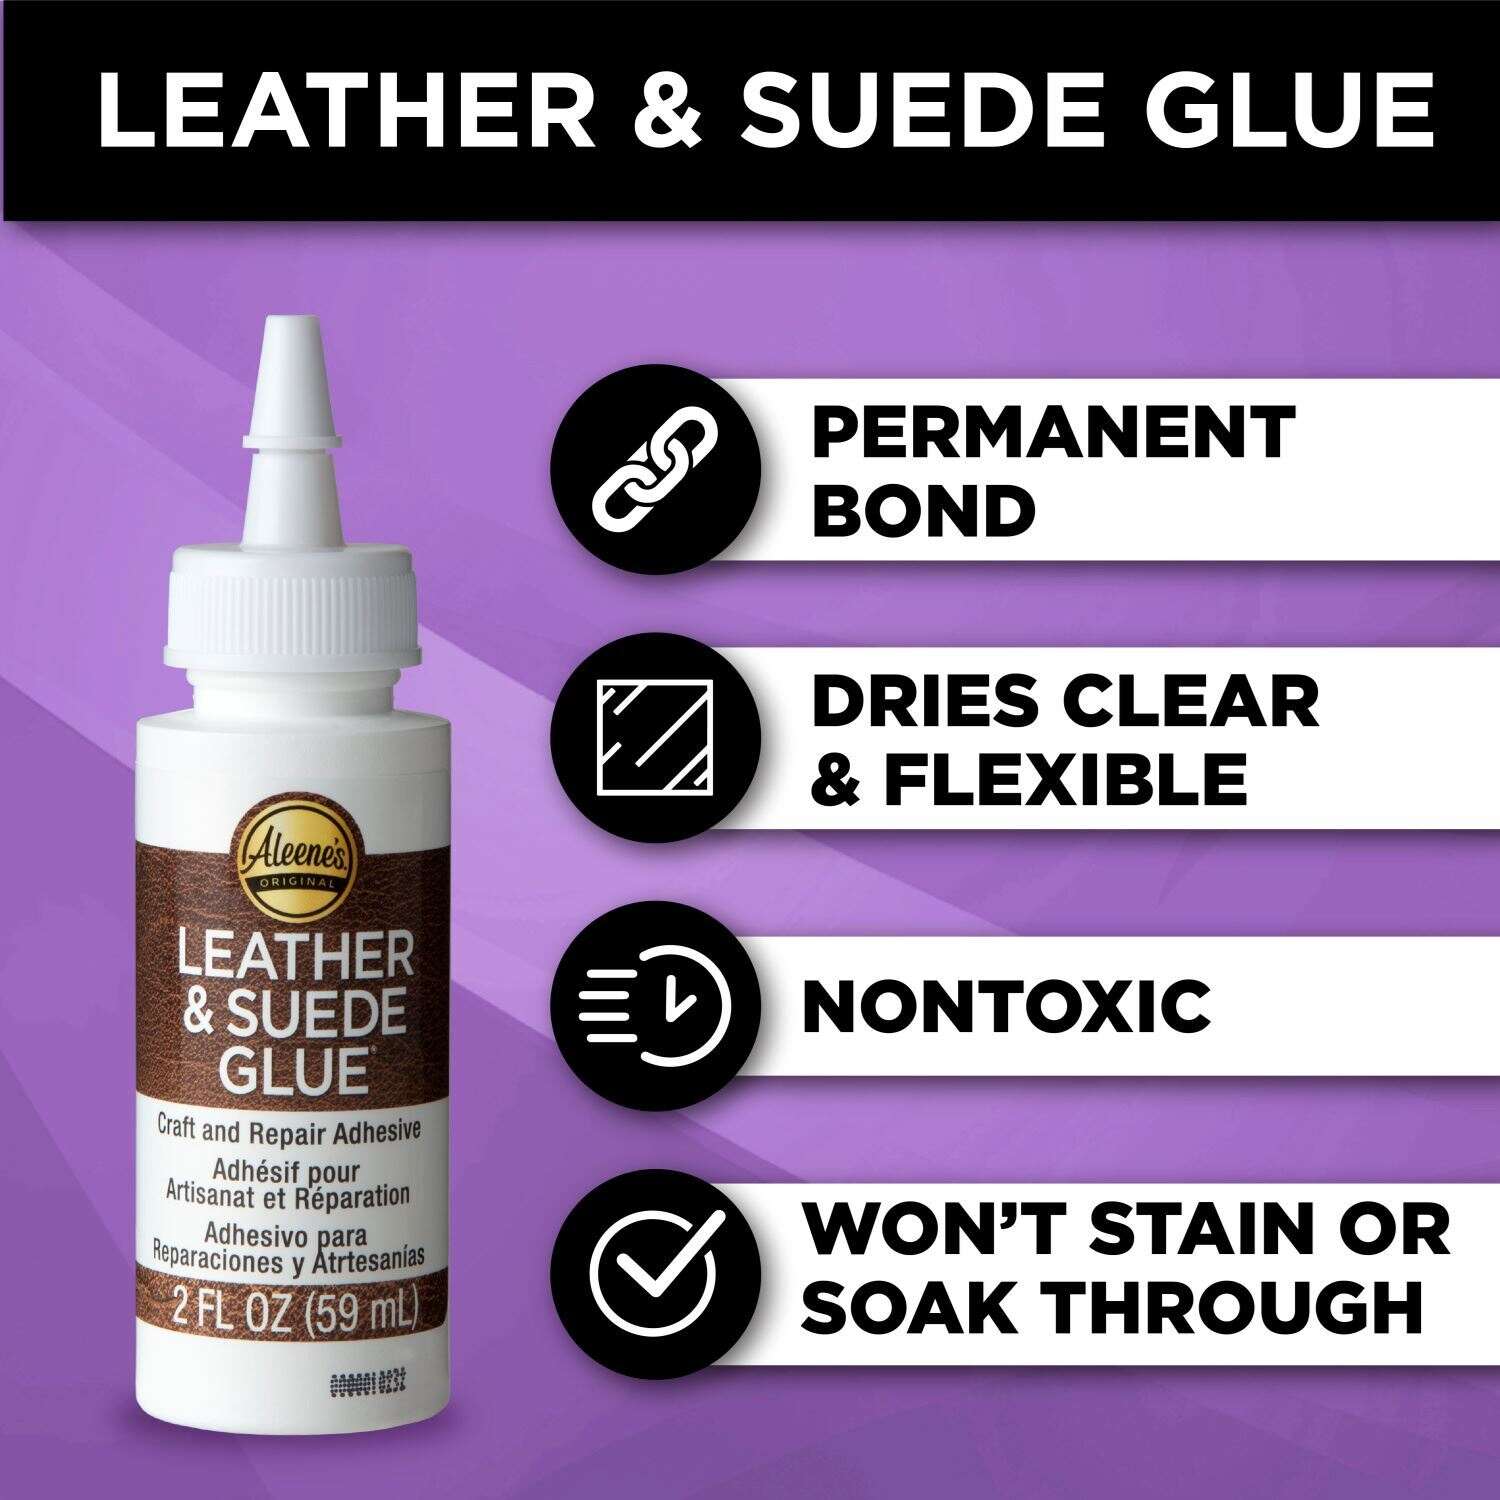 Duncan Toys Aleene's Leather & Suede Glue - 4 fl oz bottle